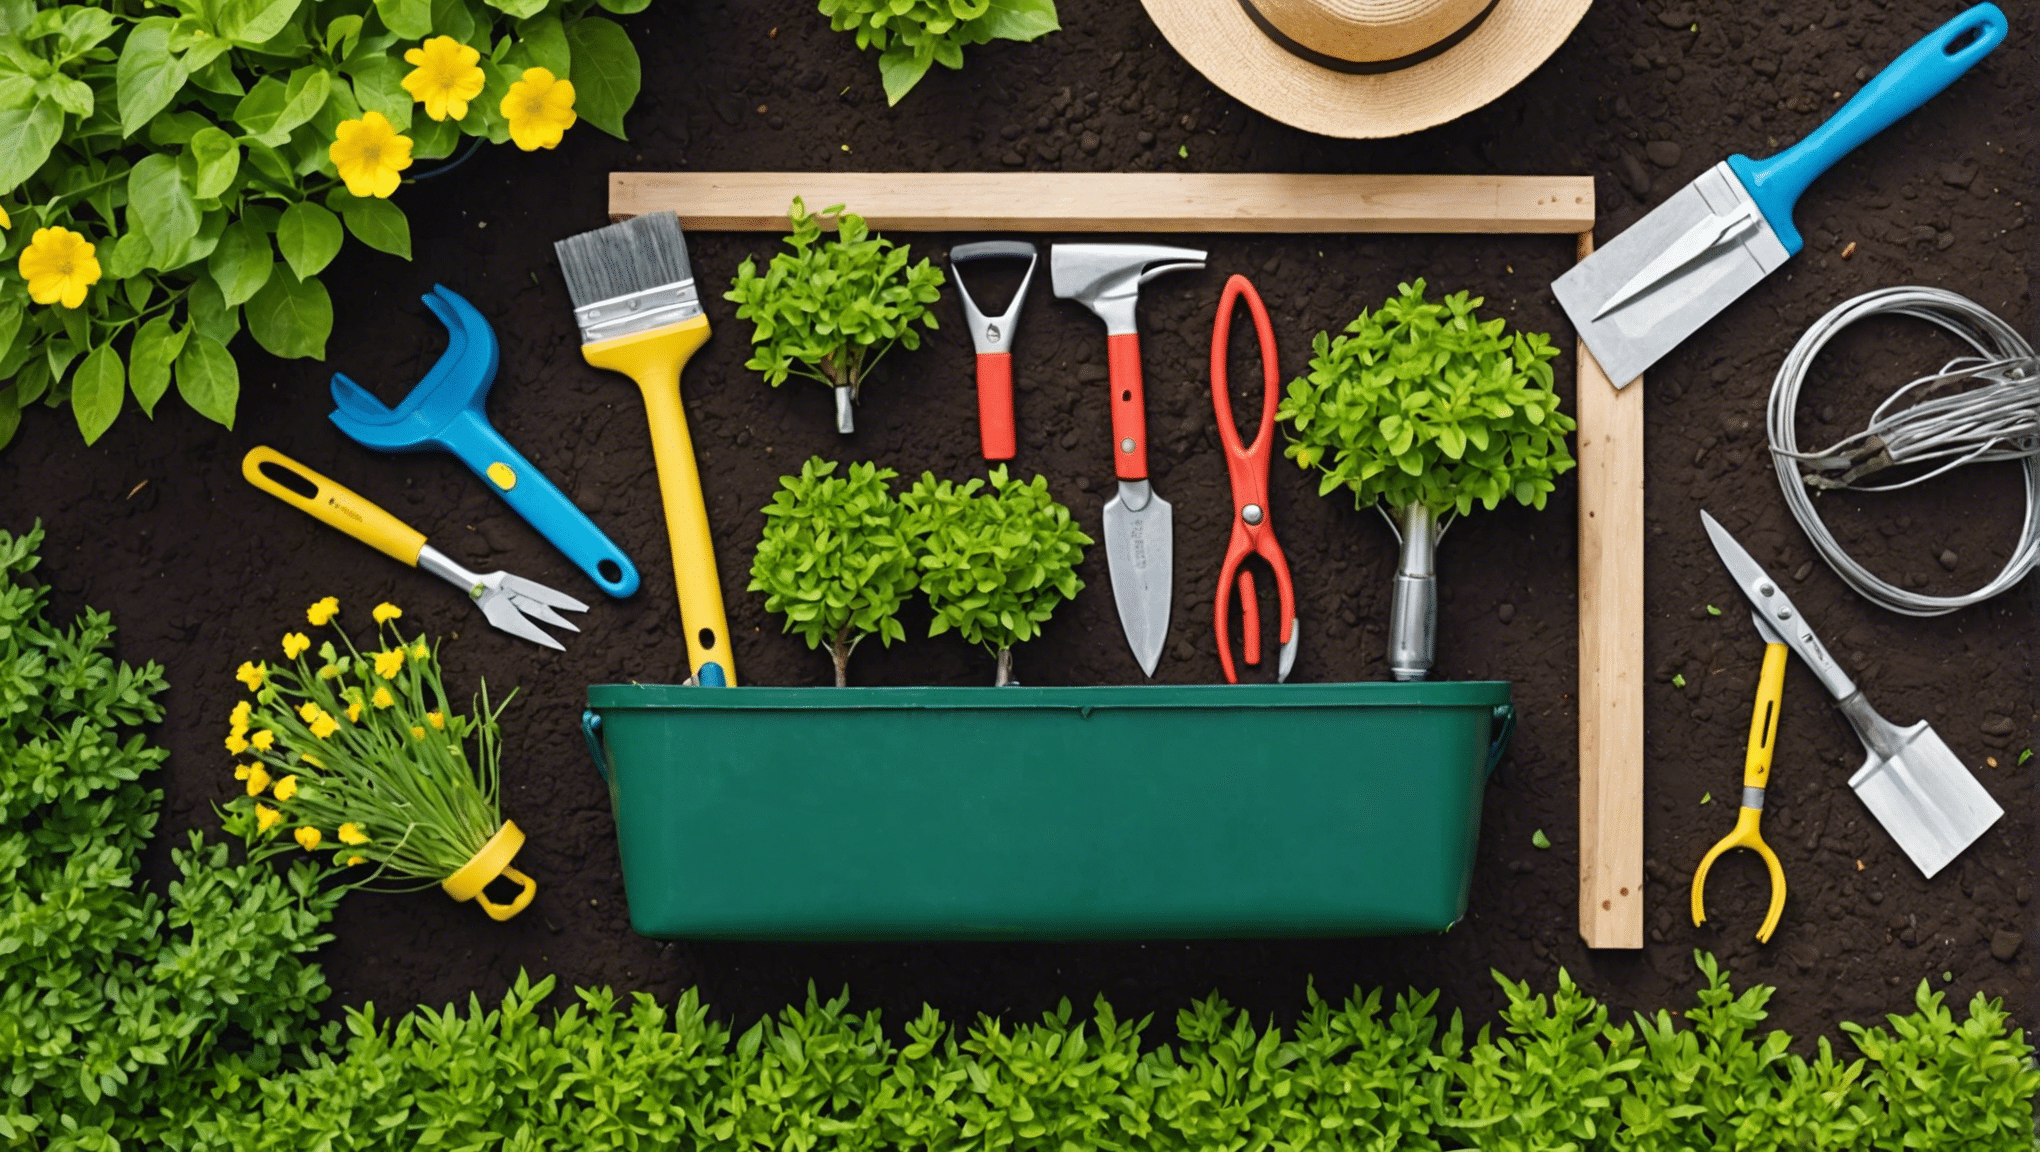 objavte nevyhnutné položky, ktoré si môžete zabaliť do tašky na záhradné náradie, a urobte si tak zábavnejší a efektívnejší zážitok zo záhrady. od záhradníckych nožníc po rukavice, zistite, čo potrebujete mať pre úspešné záhradníctvo.